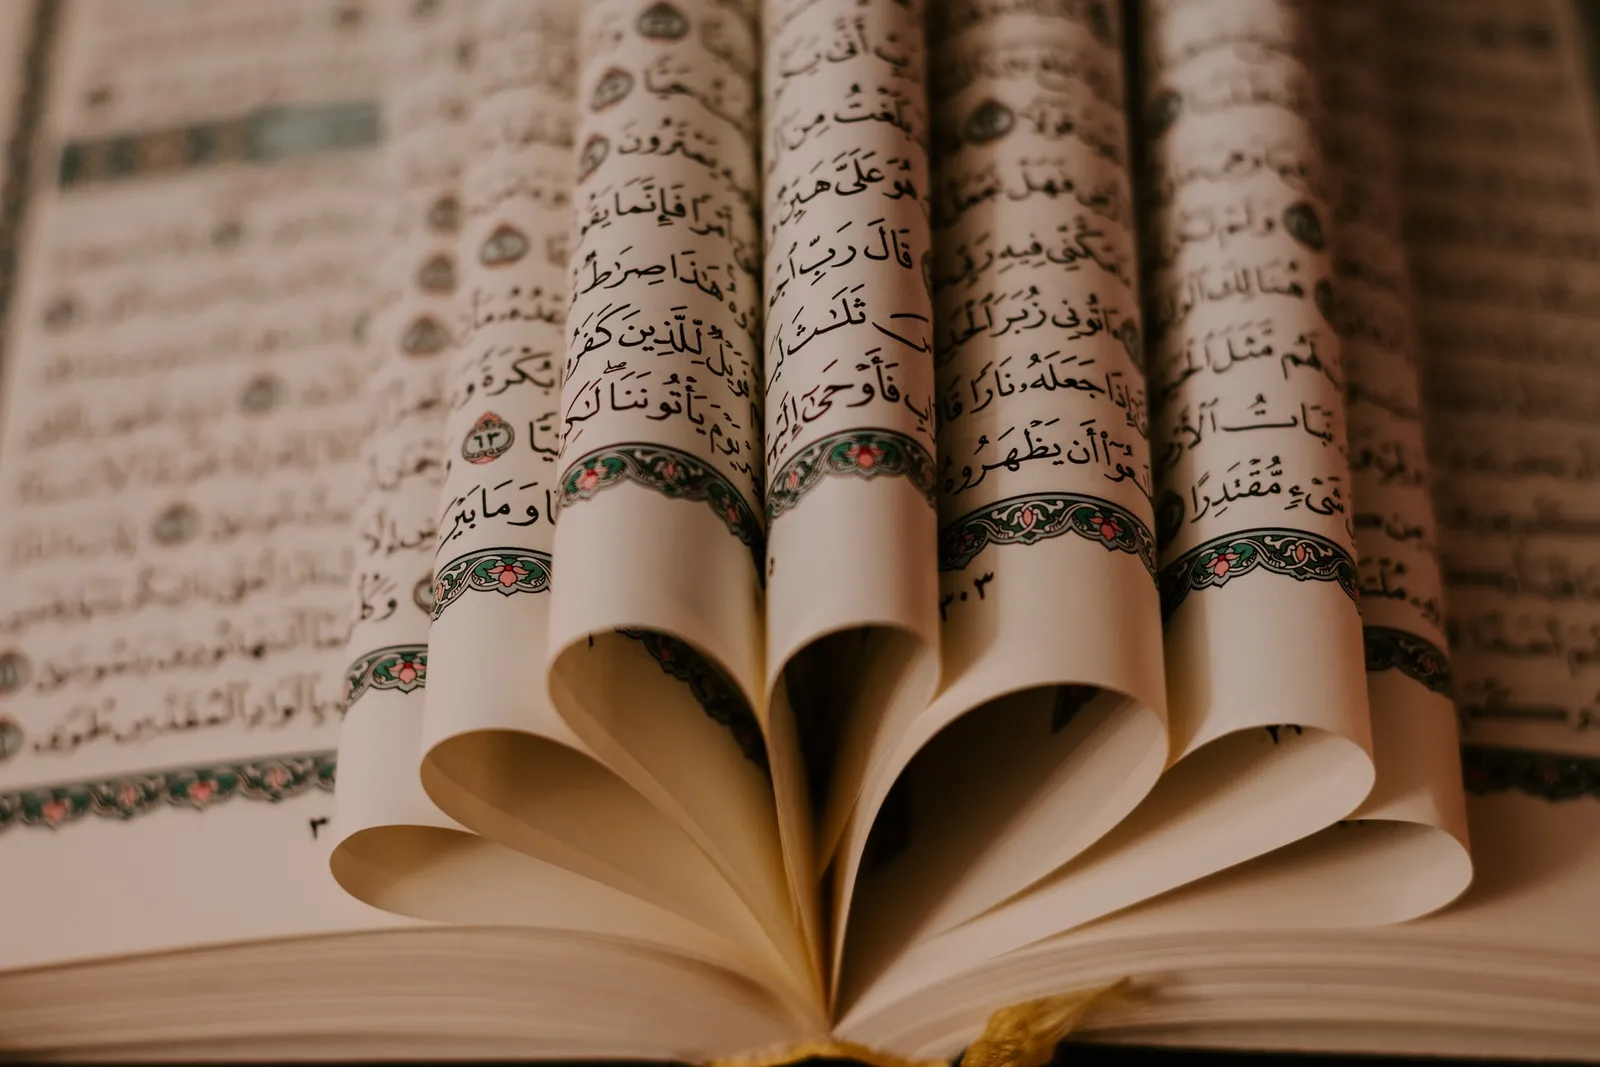 Sambut Nuzulul Quran, Ini 5 Peristiwa Penting di tanggal 17 Ramadan